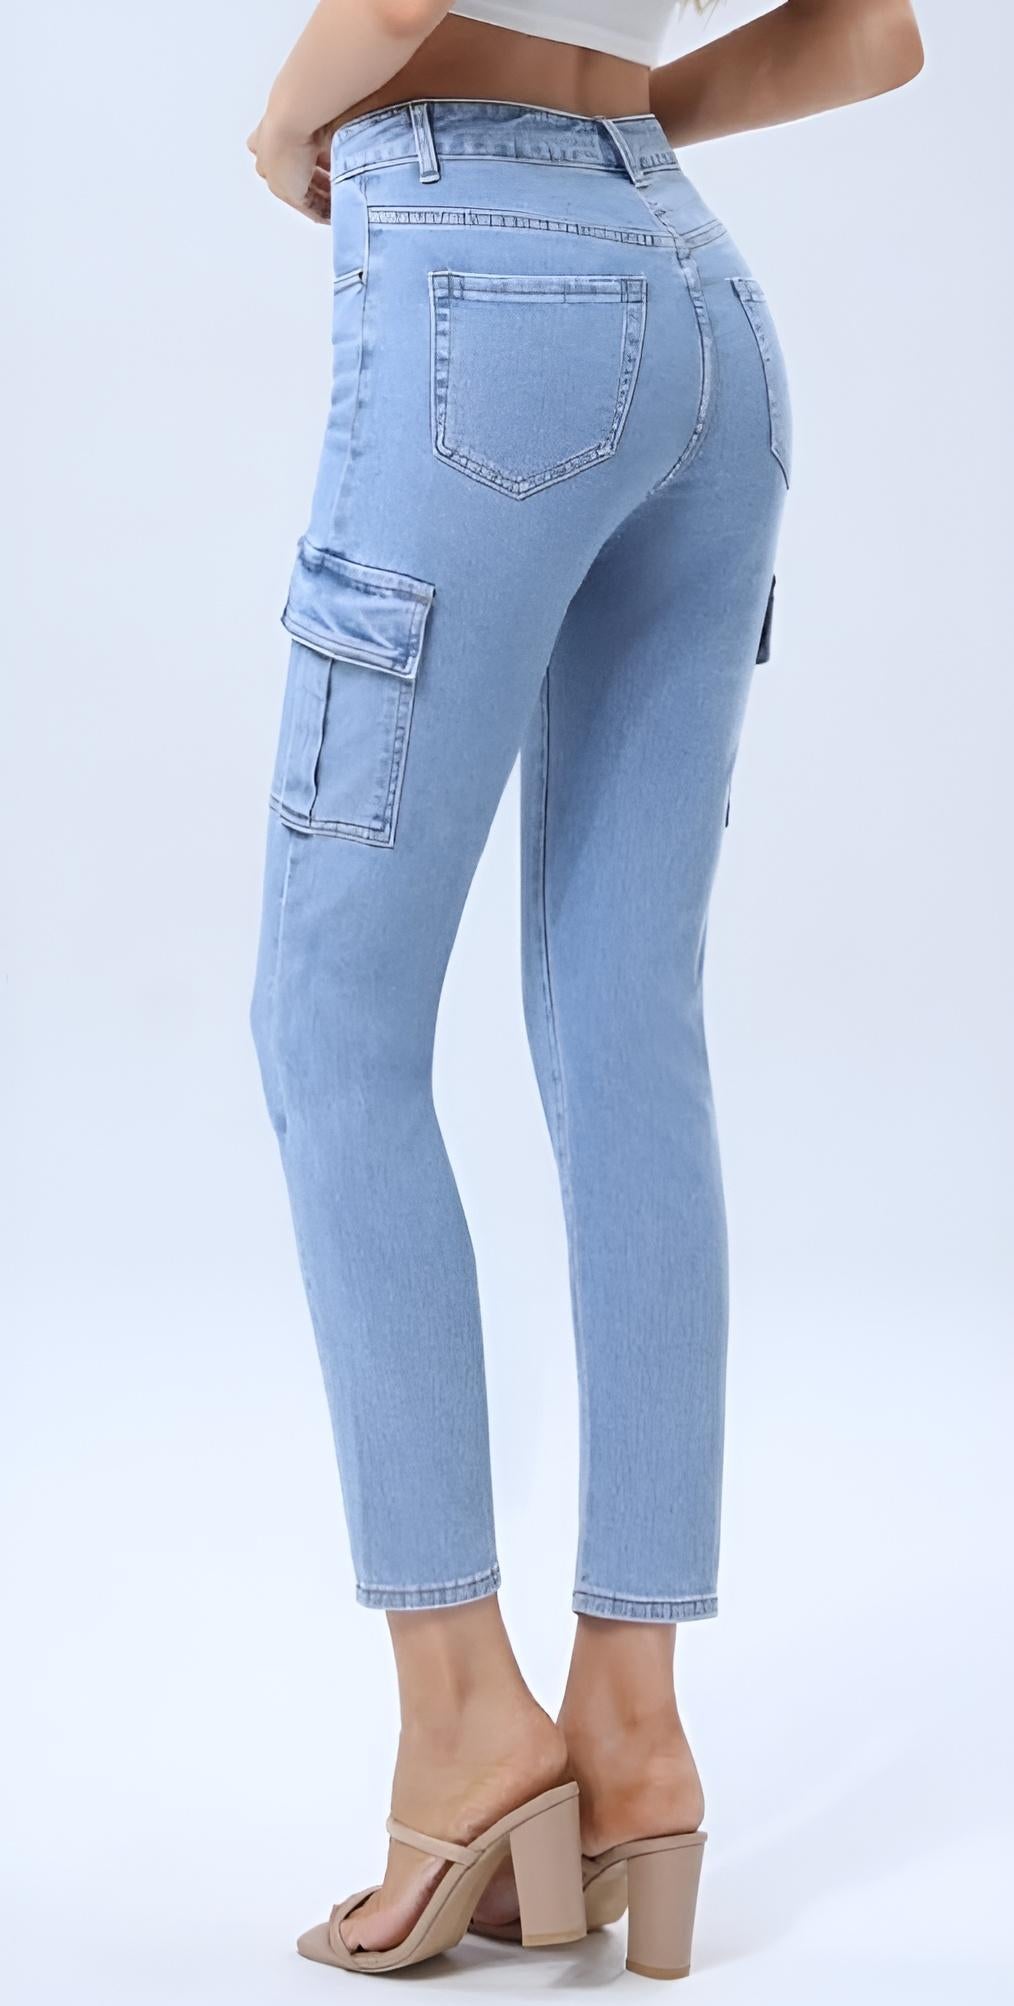 Pantalone Donna Jeans Vita Alta Skinny Tasca Passante Bottone Cerniera Aderente Casual - LE STYLE DE PARIS